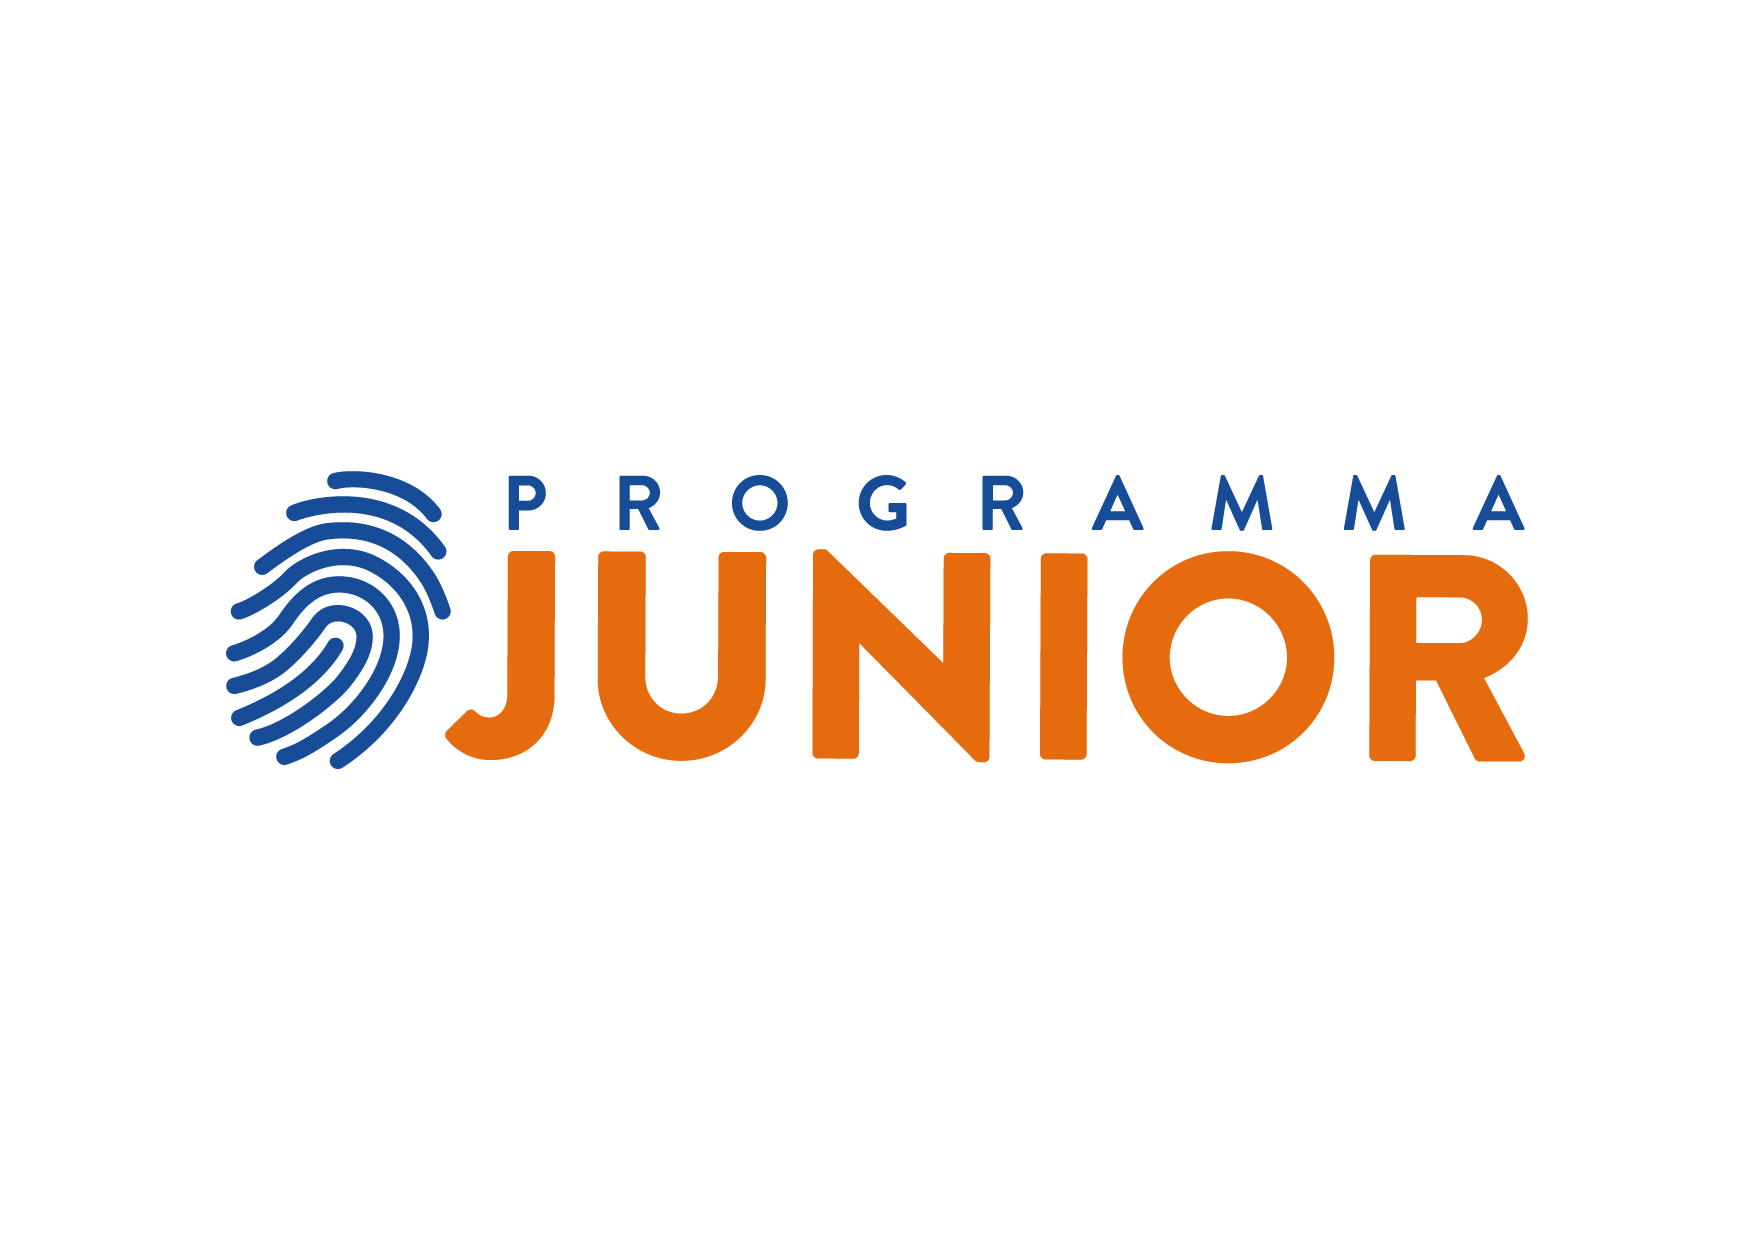 Junior è il programma didattico che introduce i ragazzi delle scuole medie alle tematiche economiche e finanziarie e li stimola a riflettere sulle principali funzioni della finanza, illustrandone l